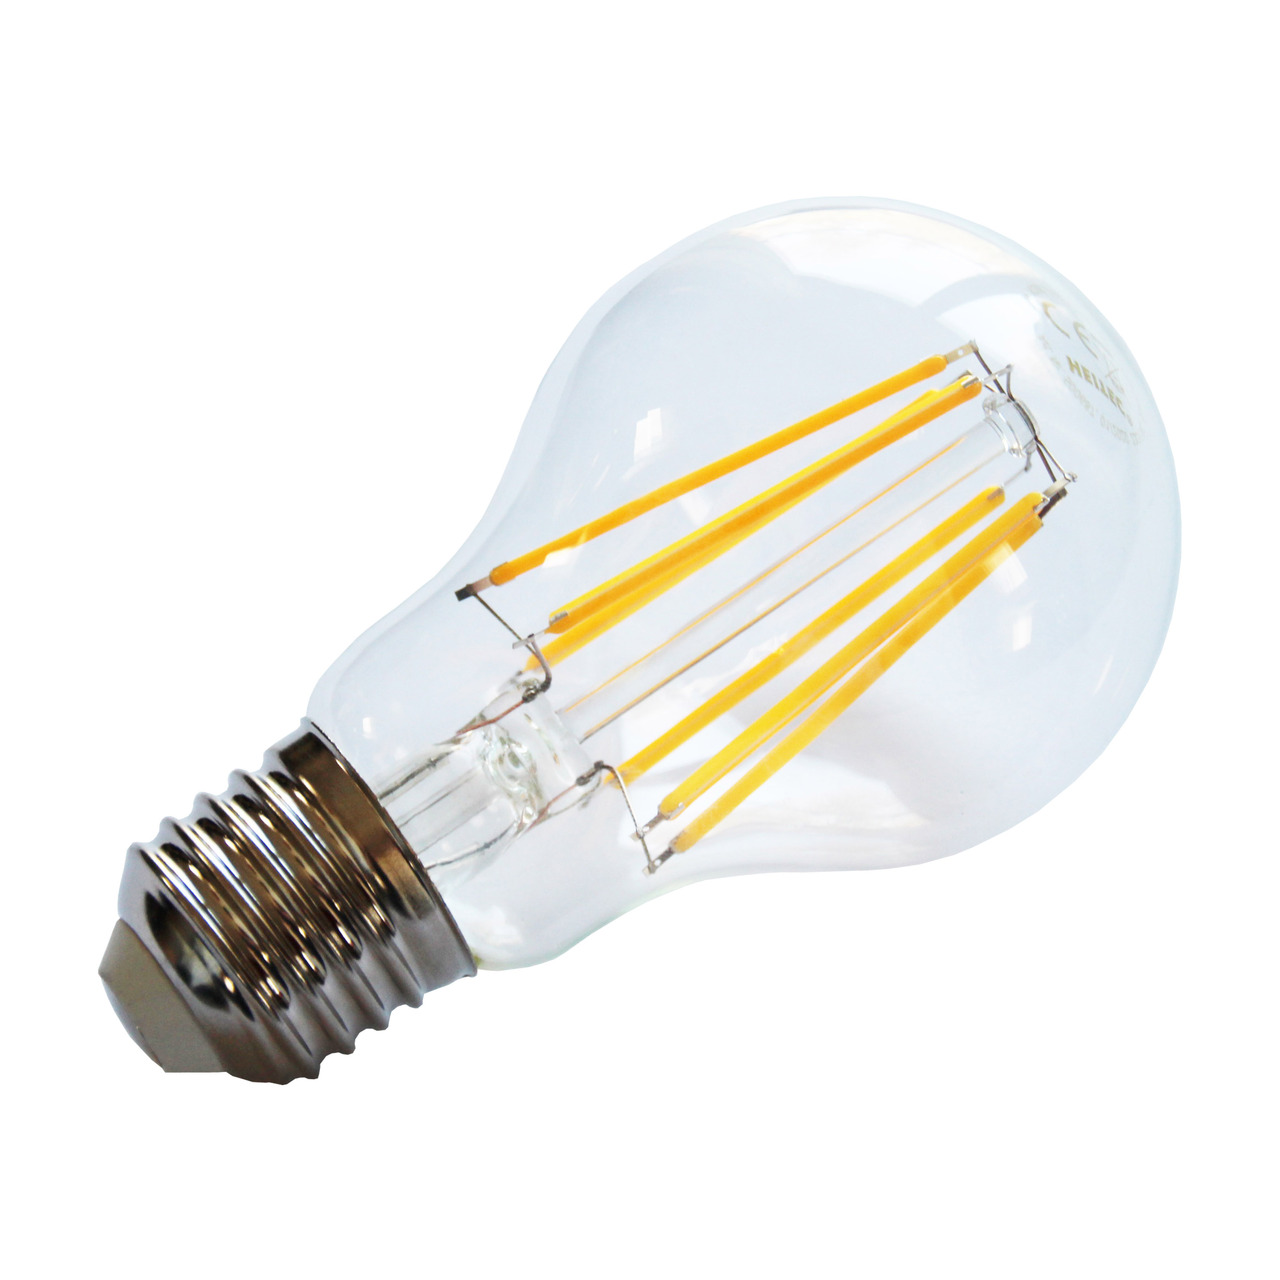 HEITEC 6-W-Filament-LED-Lampe A60- E27- 650 lm- warmweiss- klar